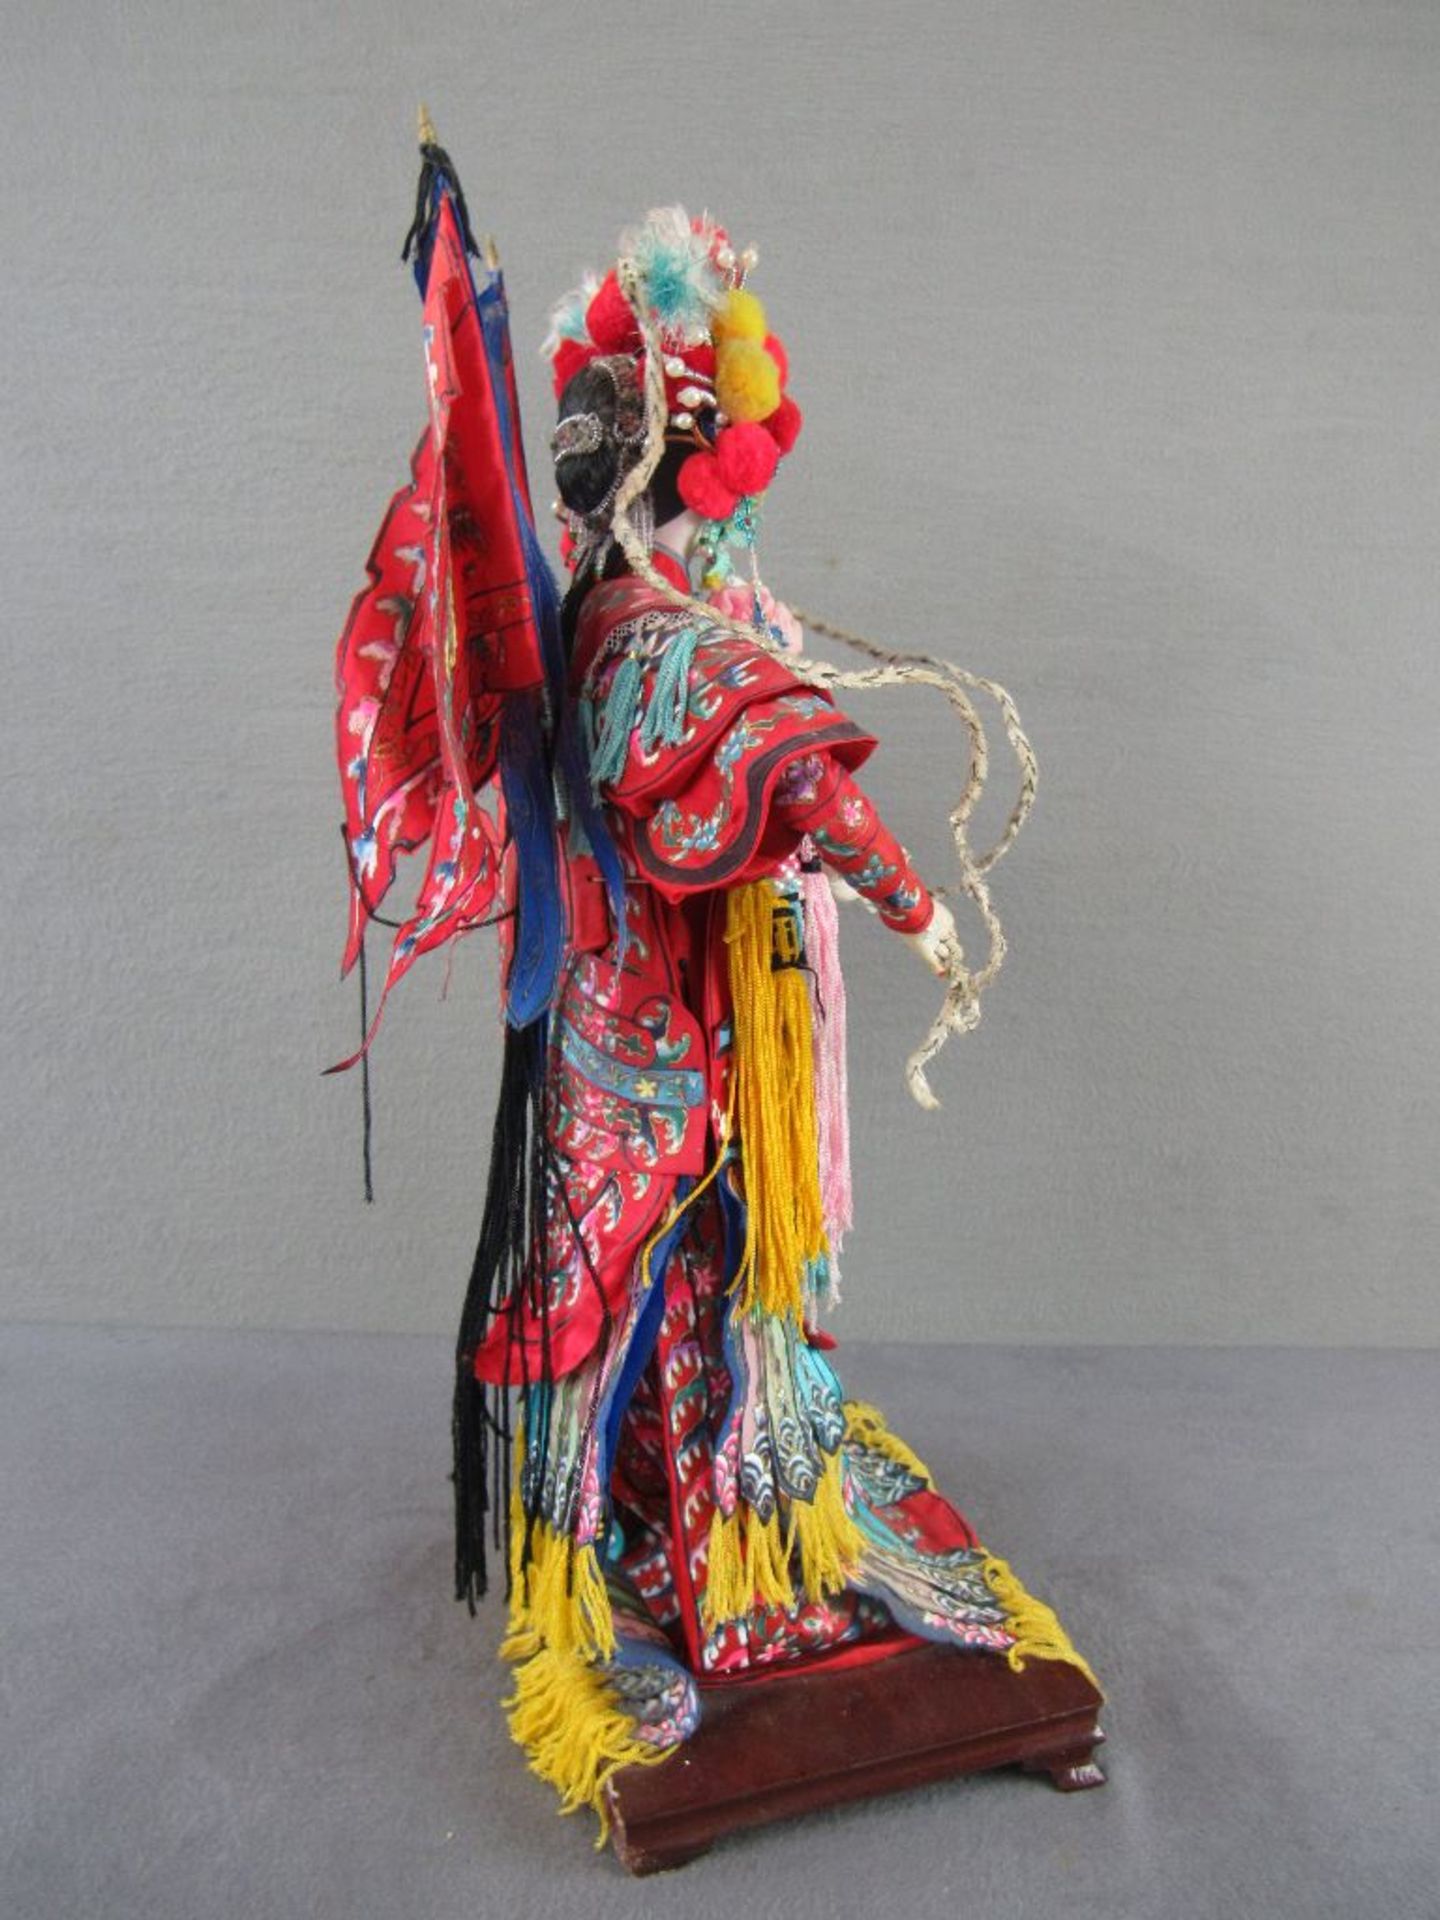 Japanische Hochzeitsfigur farbenfroh auf Holzsockel 43cm hoch - Image 4 of 6